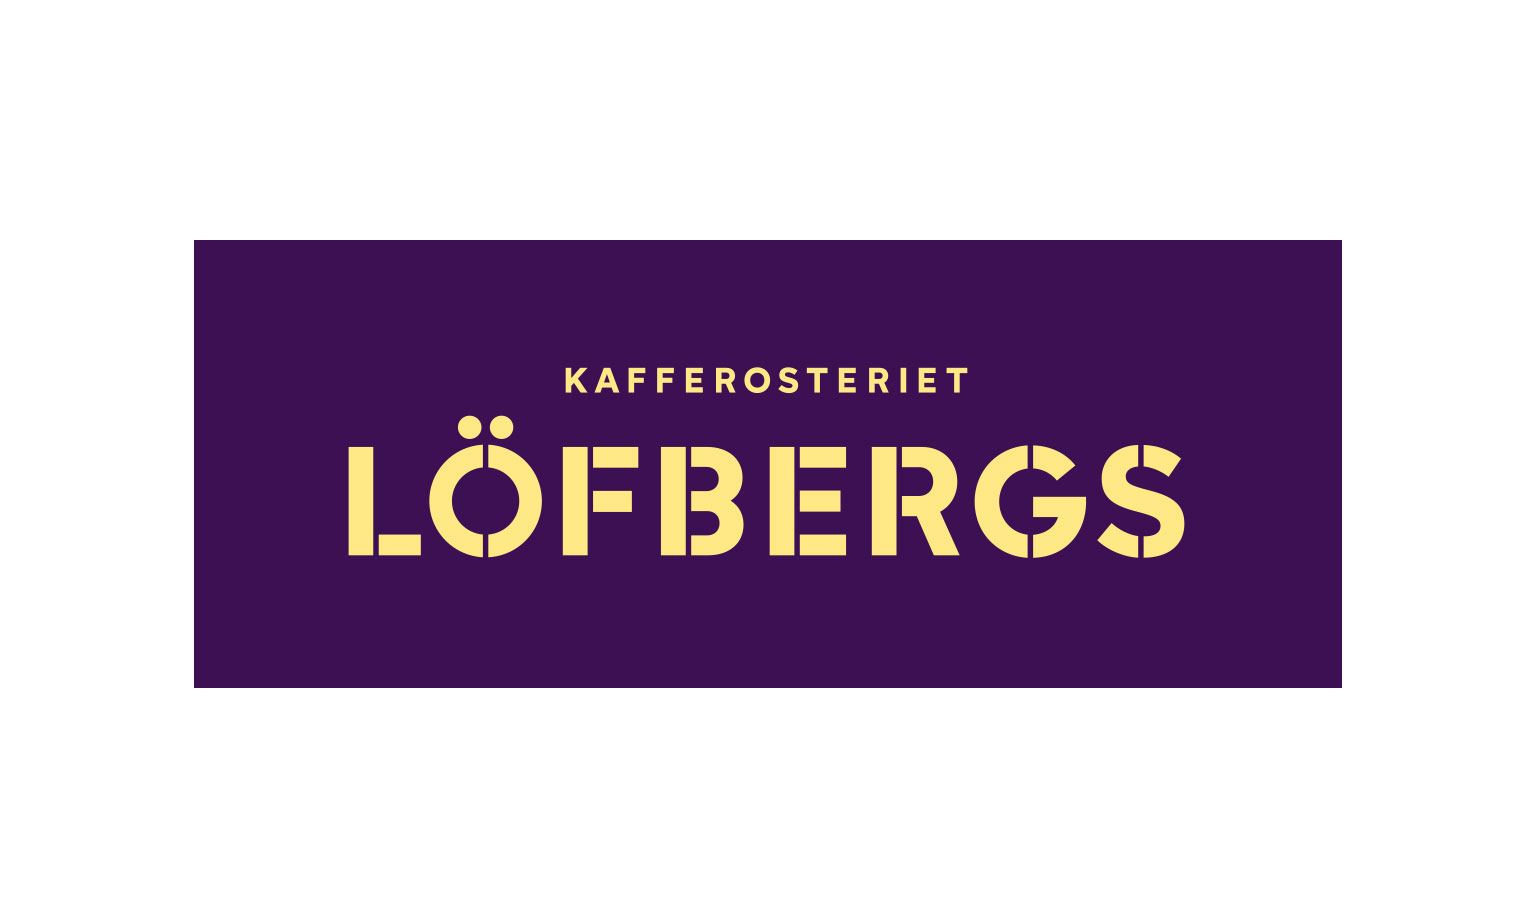 Logotyp Löfbergs